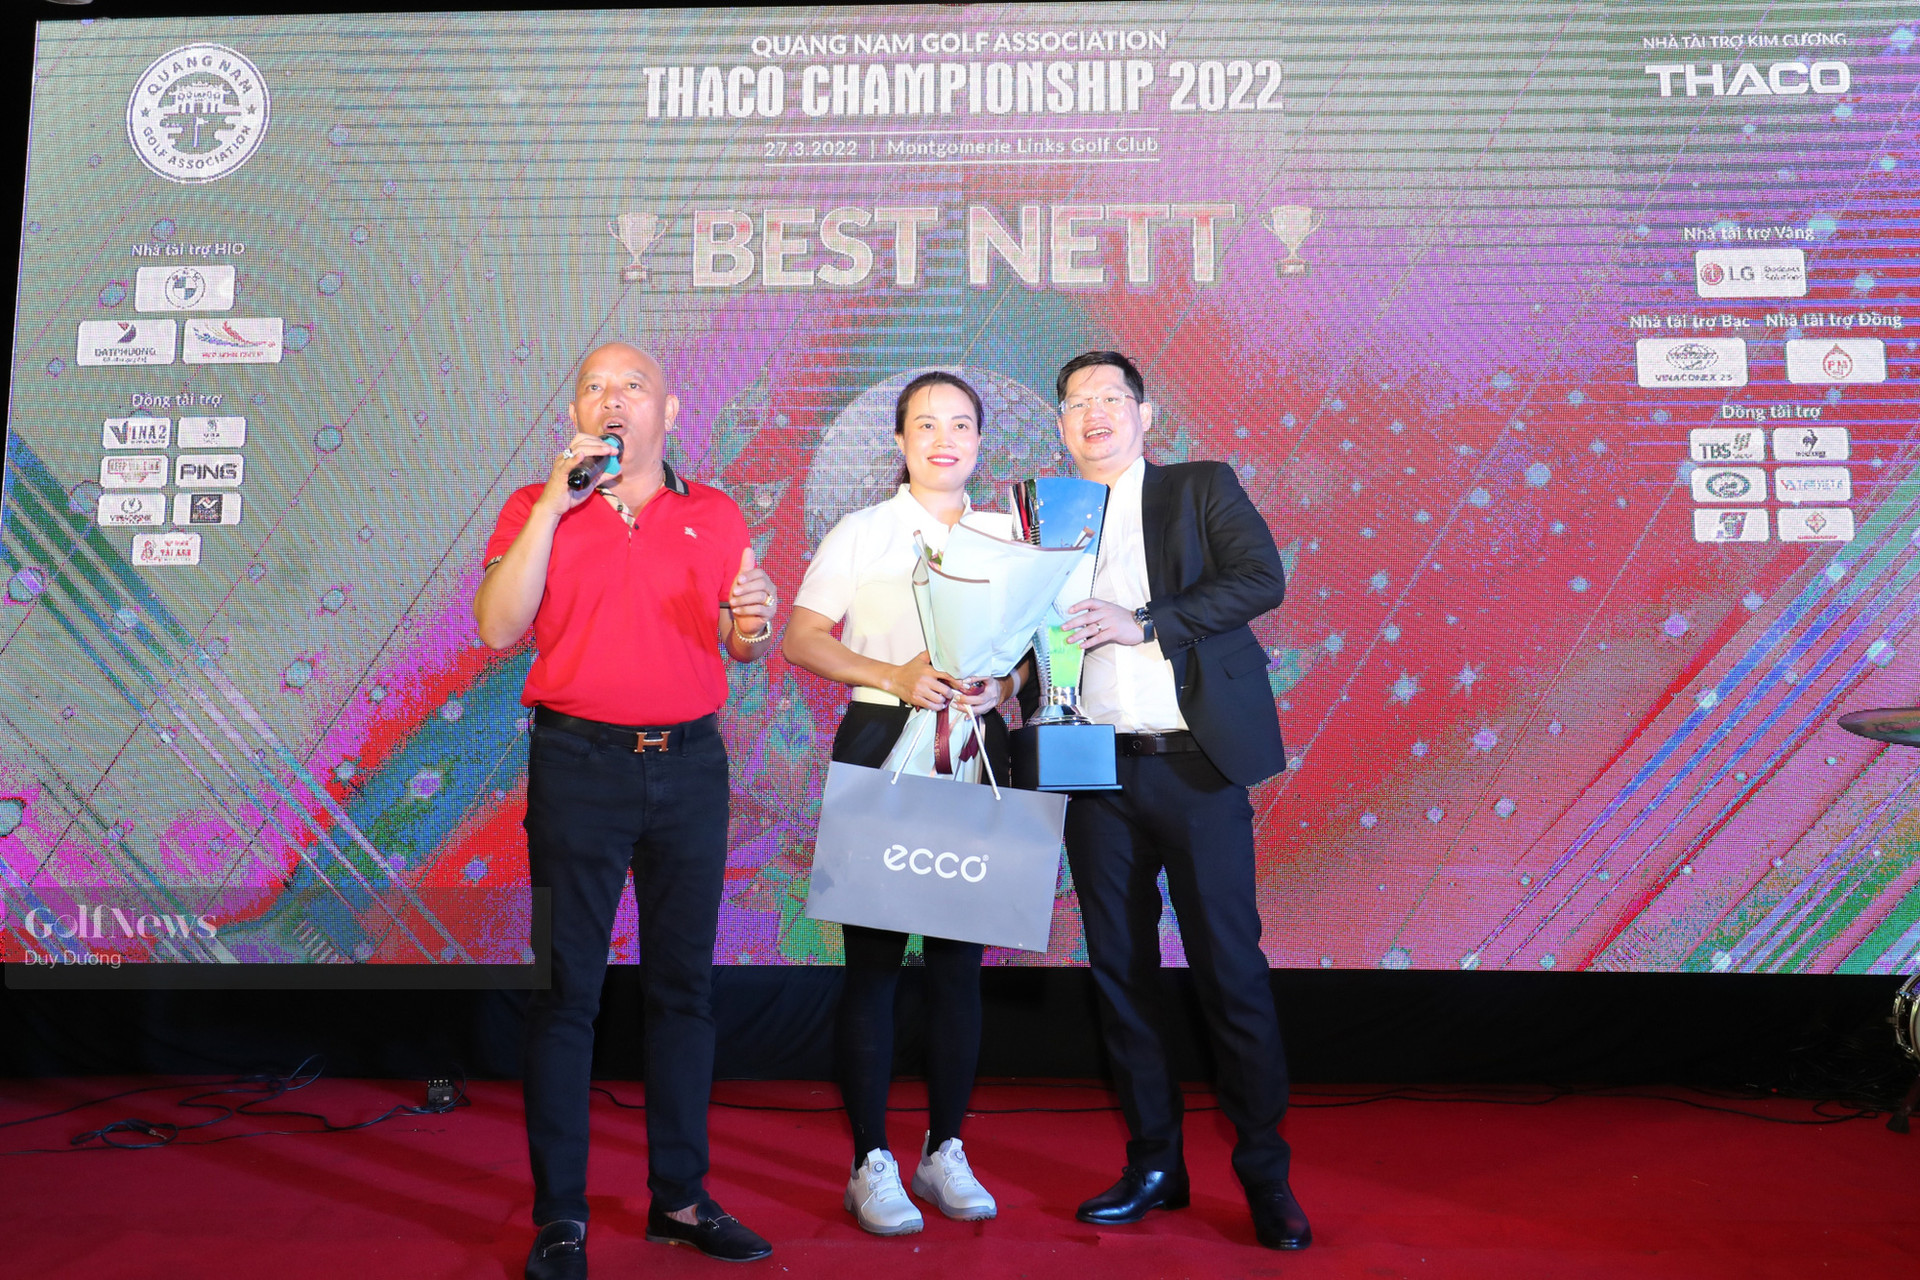 Thaco Championship – Khai màn chuỗi sự kiện của hội golf Quảng Nam trong năm 2022 - Ảnh 3.